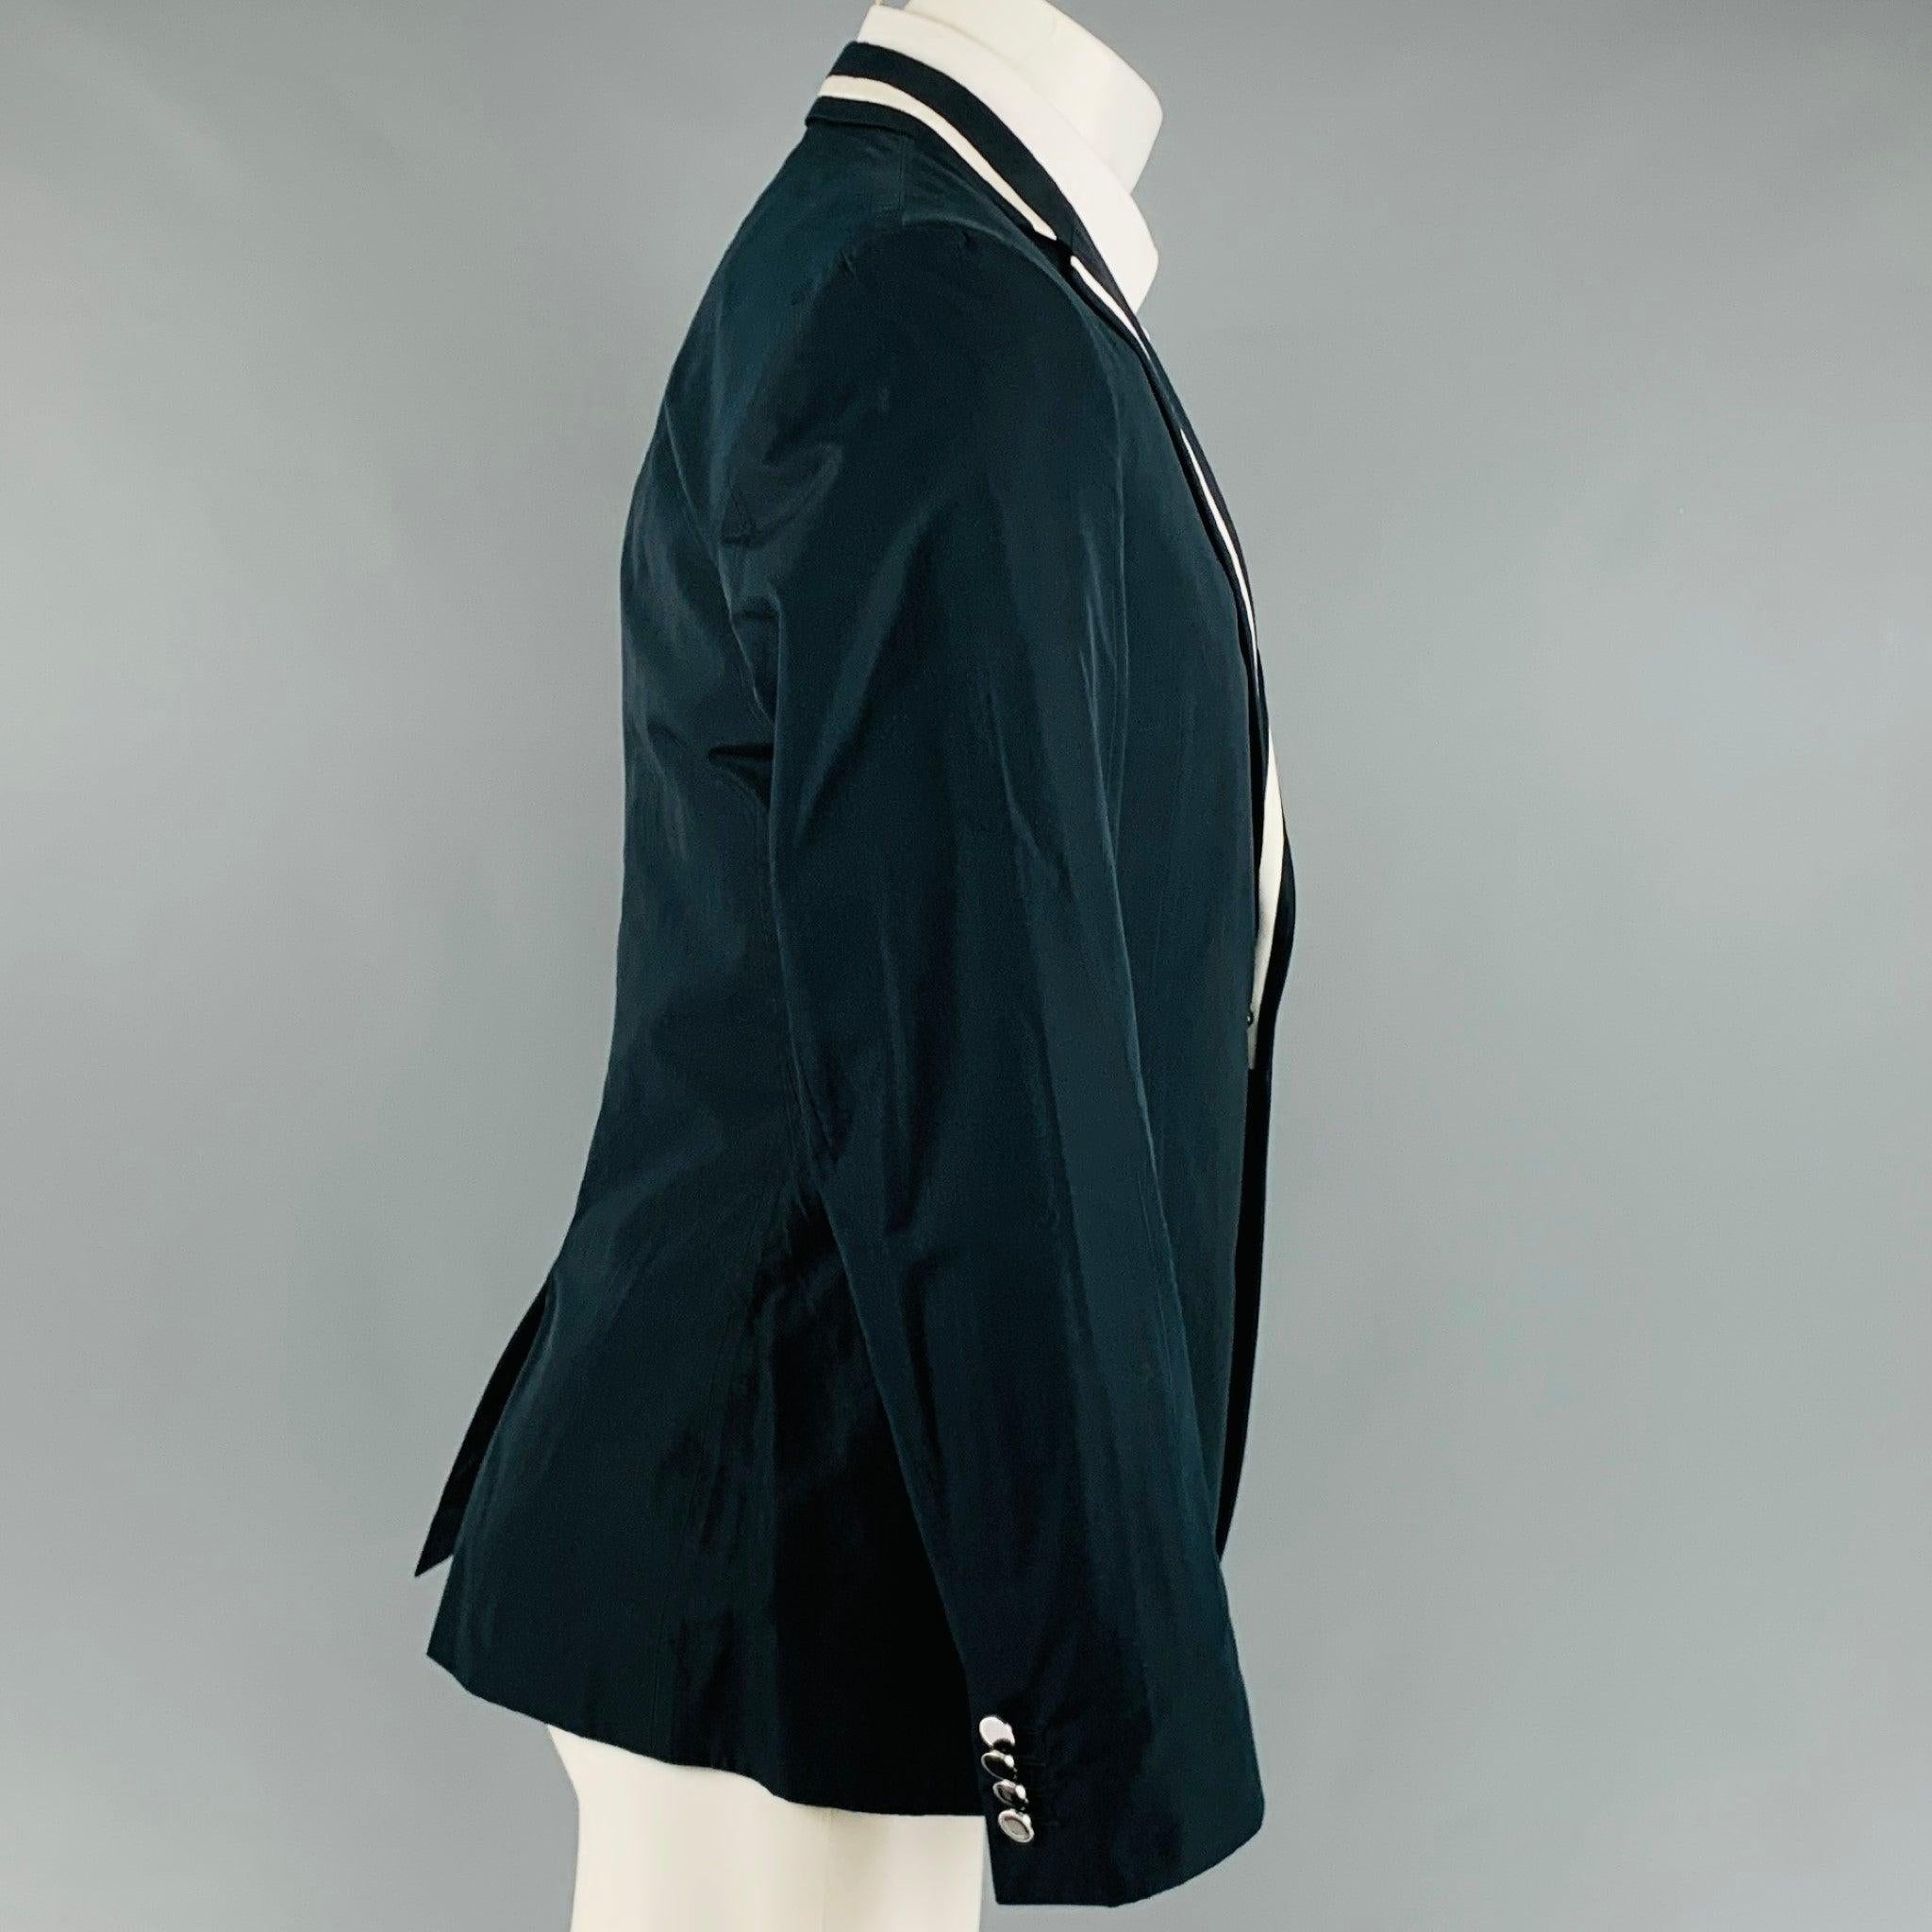 D&G by DOLCE & GABBANA Manteau de sport en coton mélangé noir et blanc Taille 40 Pour hommes en vente